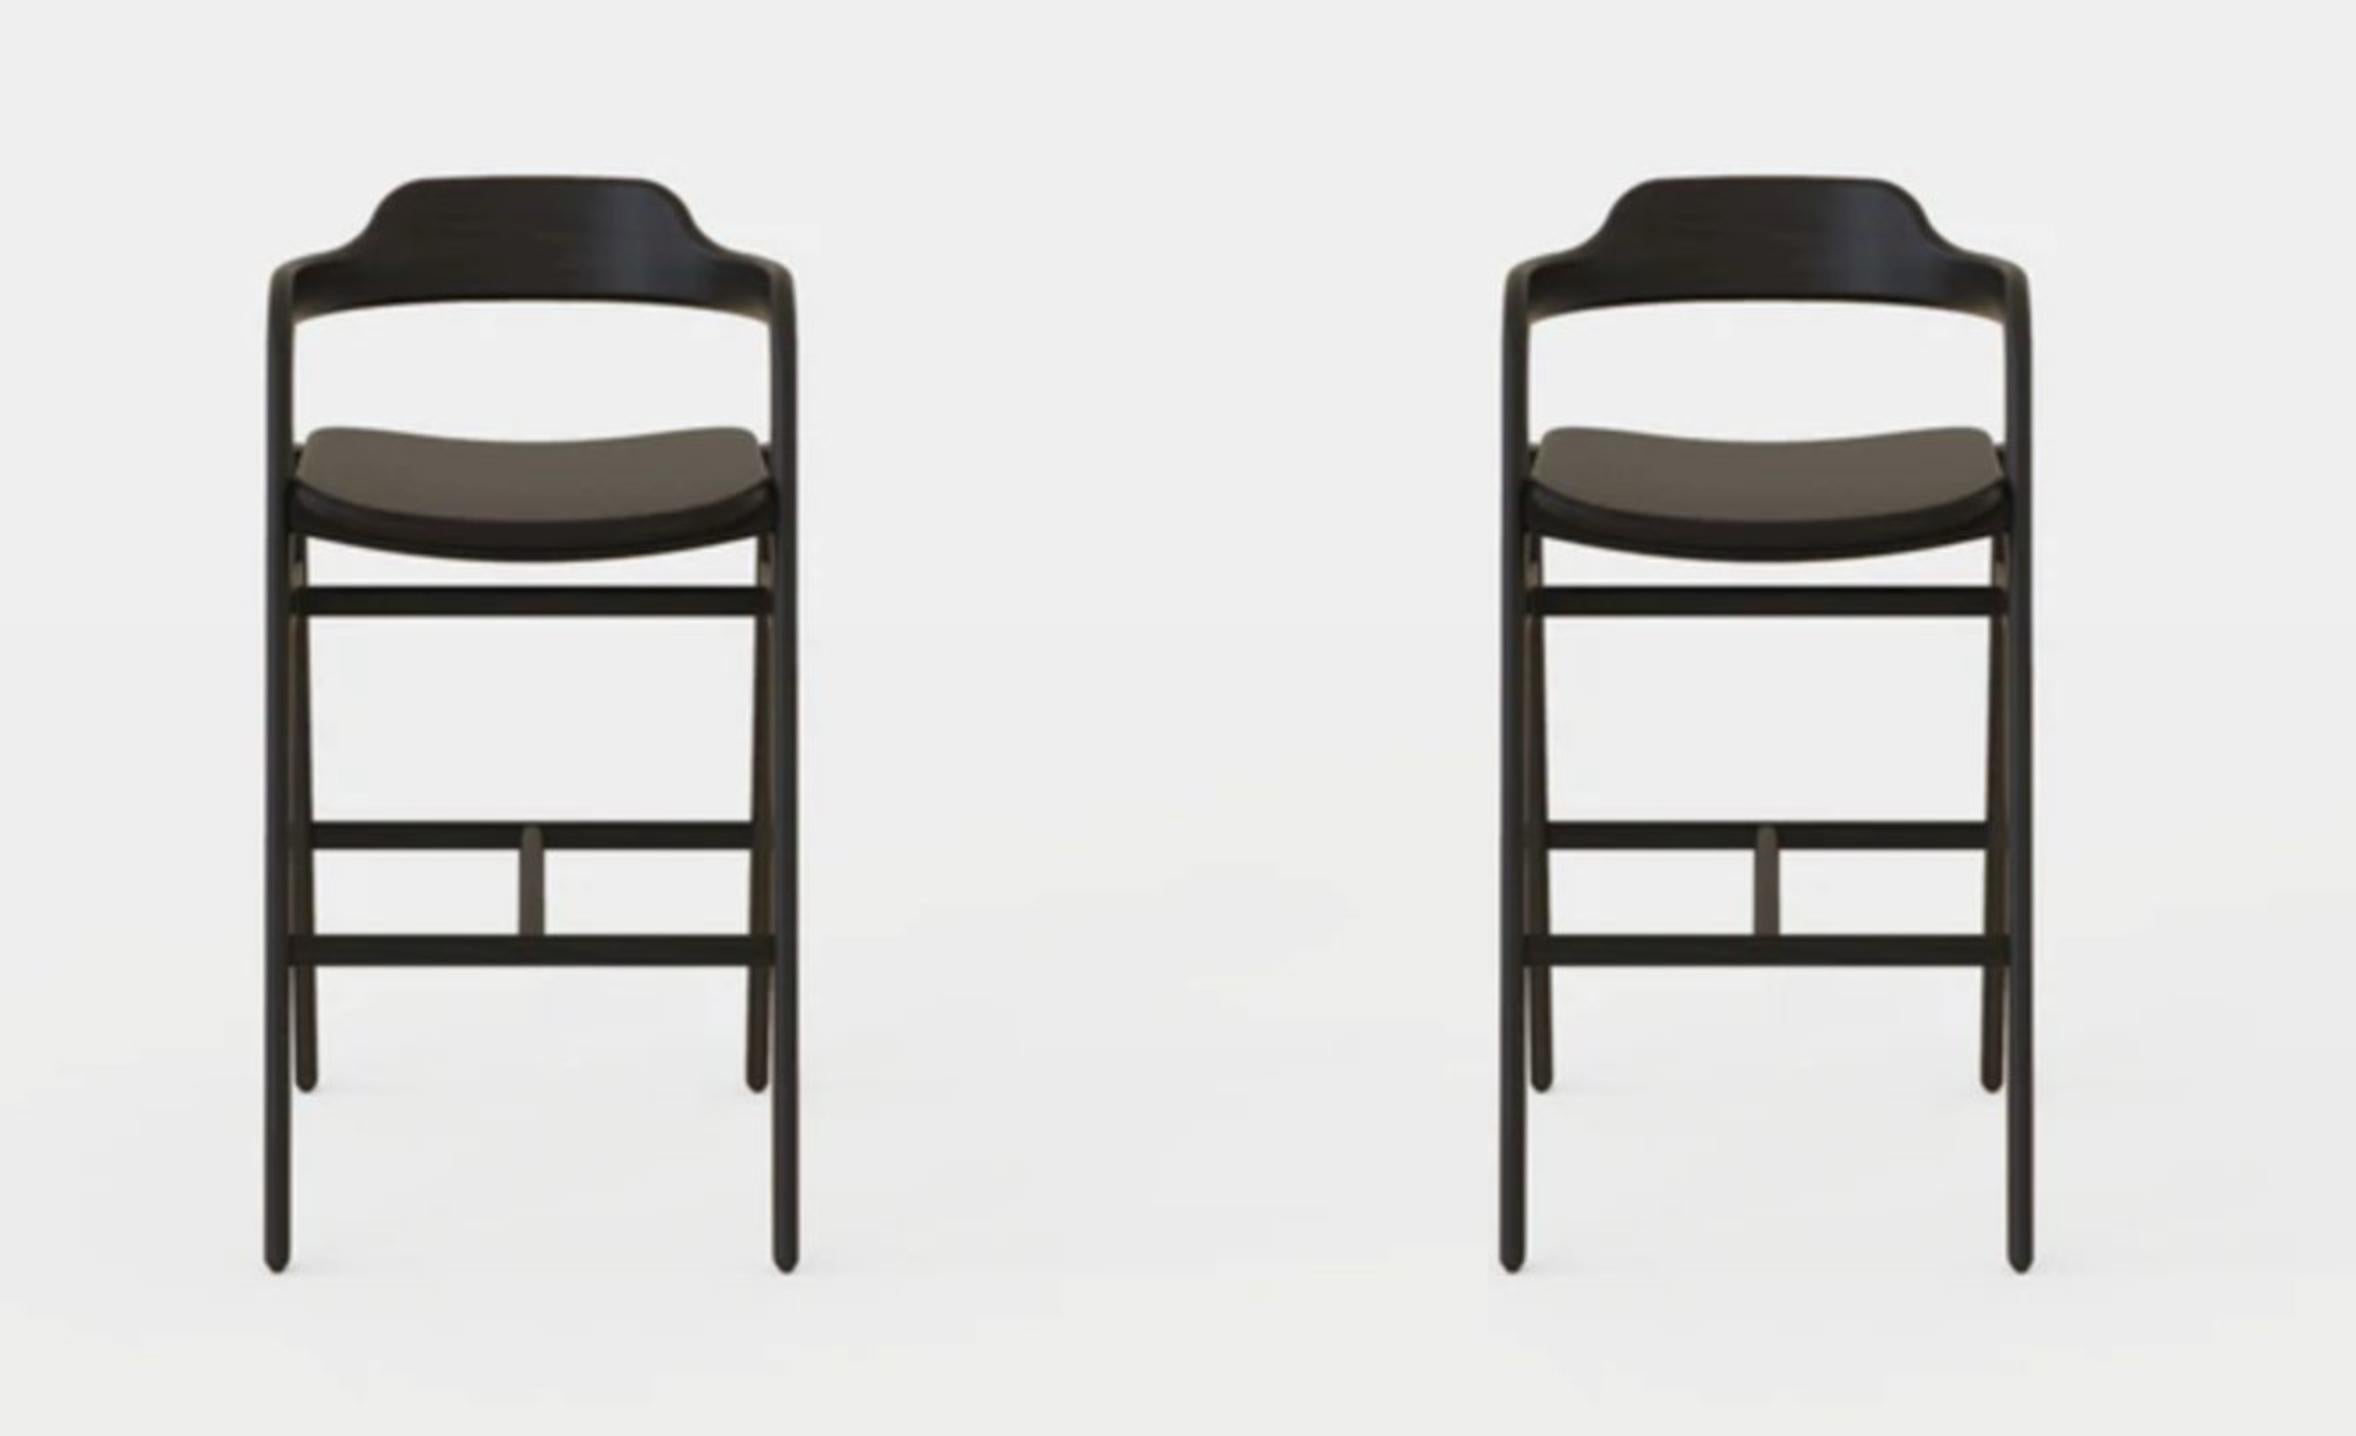 Ensemble de 2 chaises hautes équilibrées par Sebastián Angeles
Matériau : noyer
Dimensions : L 45 x P 40 x 100 cm : L 45 x P 40 x 100 cm.
Également disponible : autres couleurs disponibles.

L'amour des processus, les propriétés des matériaux, les